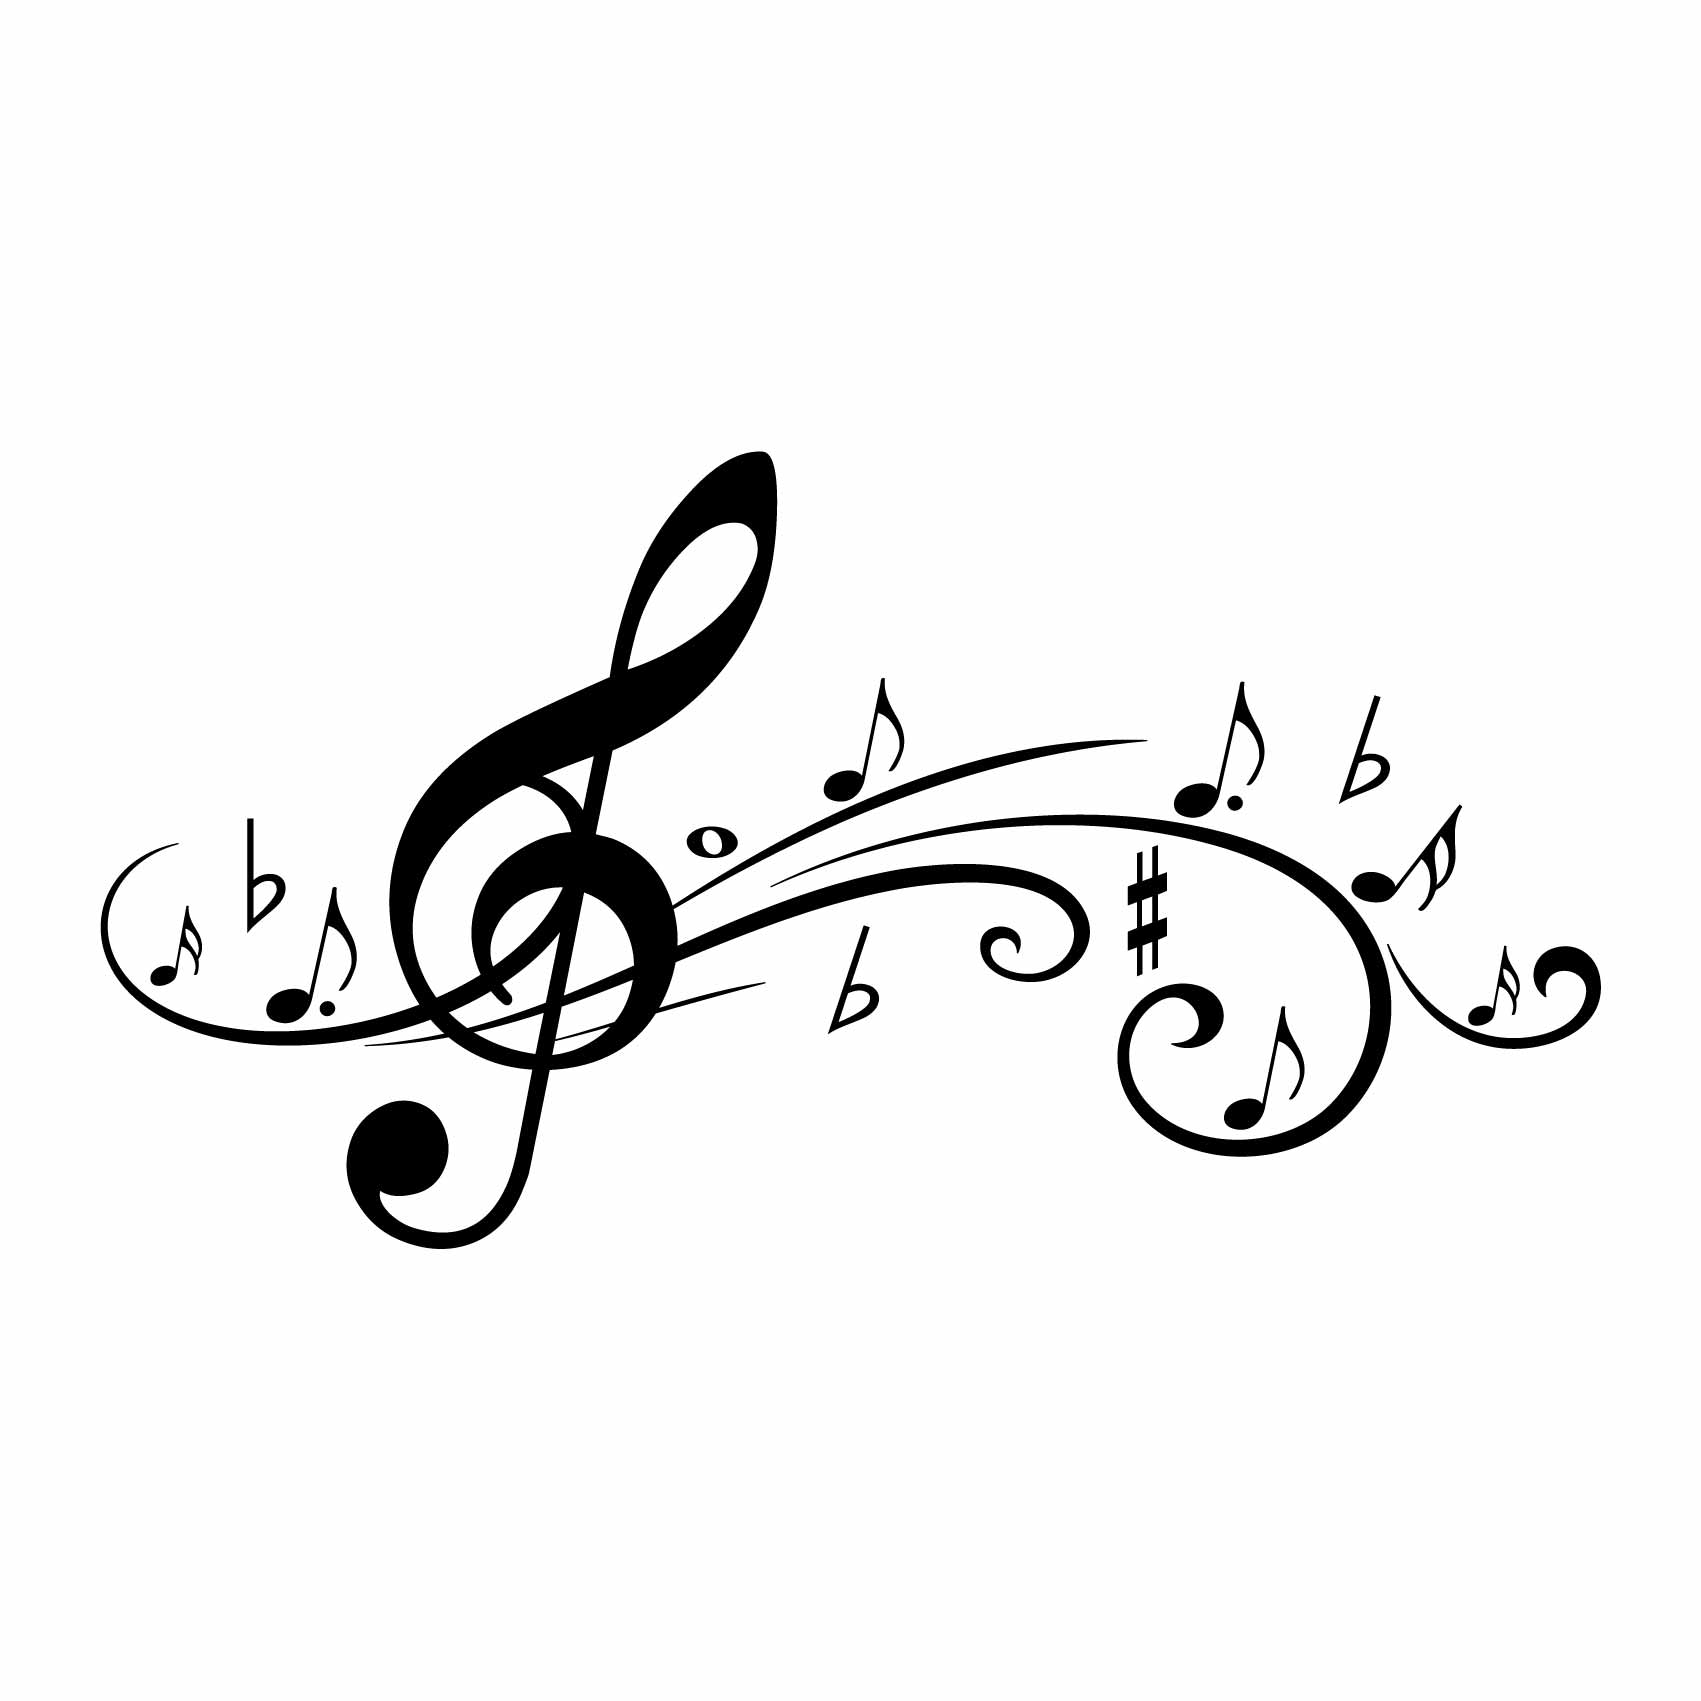 stickers-muraux-notes-de-musique-ref6musique-autocollant-muraux-musique-sticker-mural-musical-note-notes-deco-salon-chambre-adulte-ado-enfant-(2)